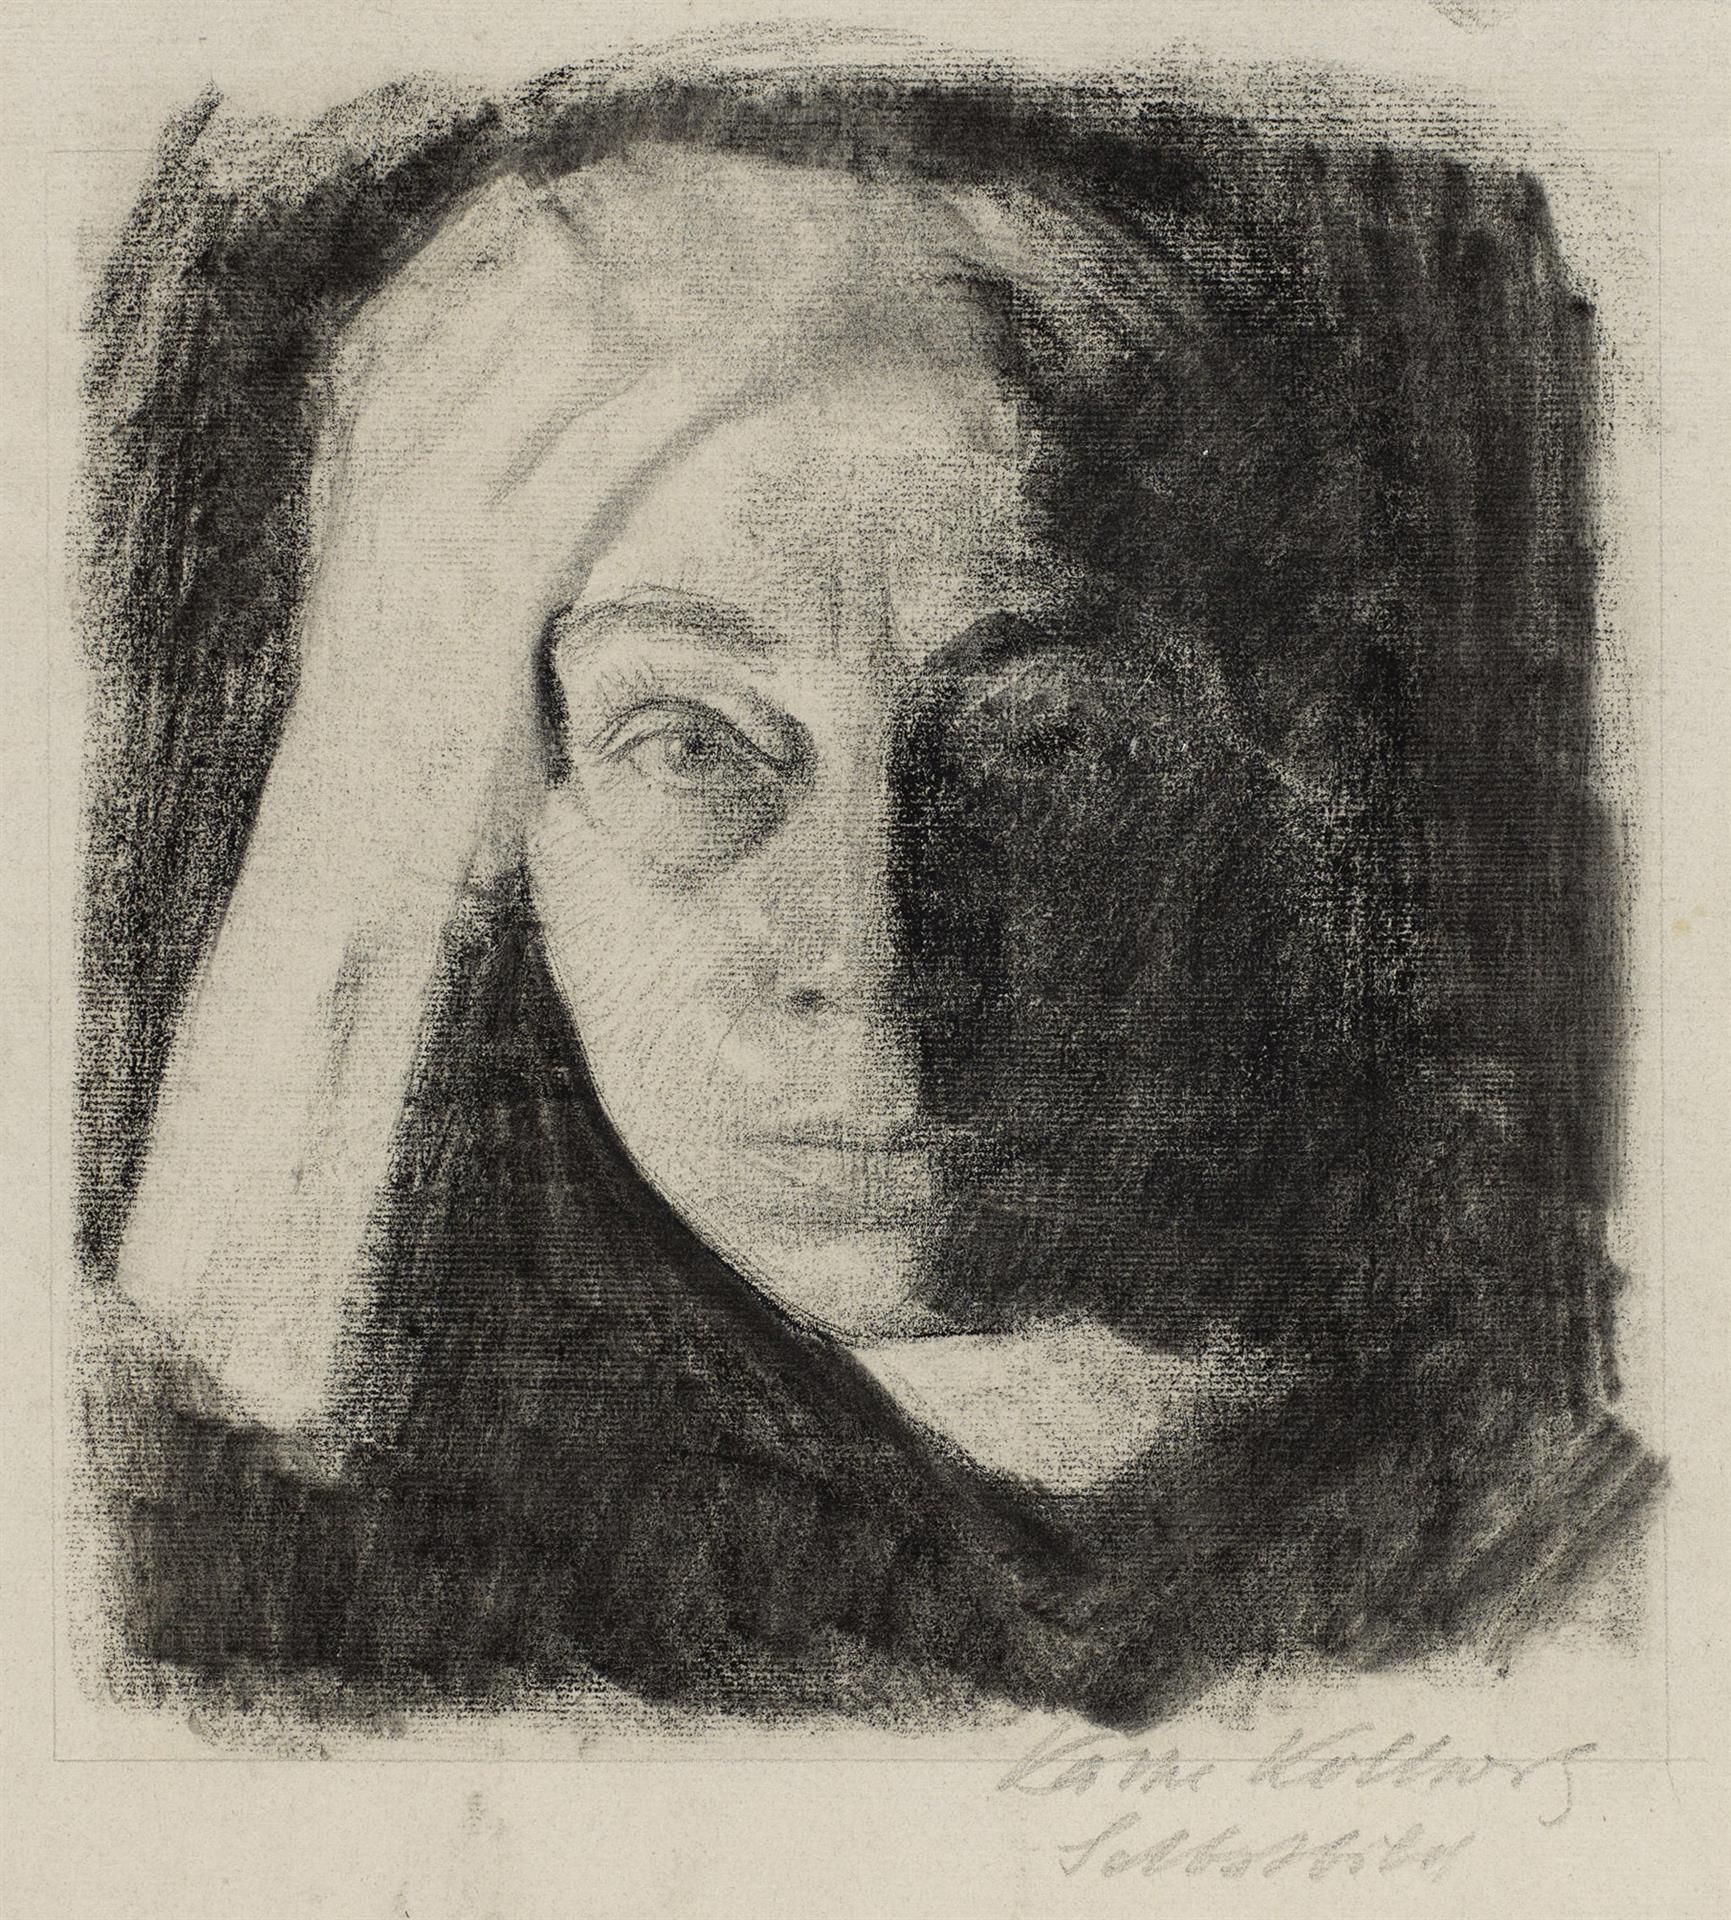 Käthe Kollwitz, Autoportrait de face, vers 1910, fusain sur papier Ingres gris-bleu, NT 688